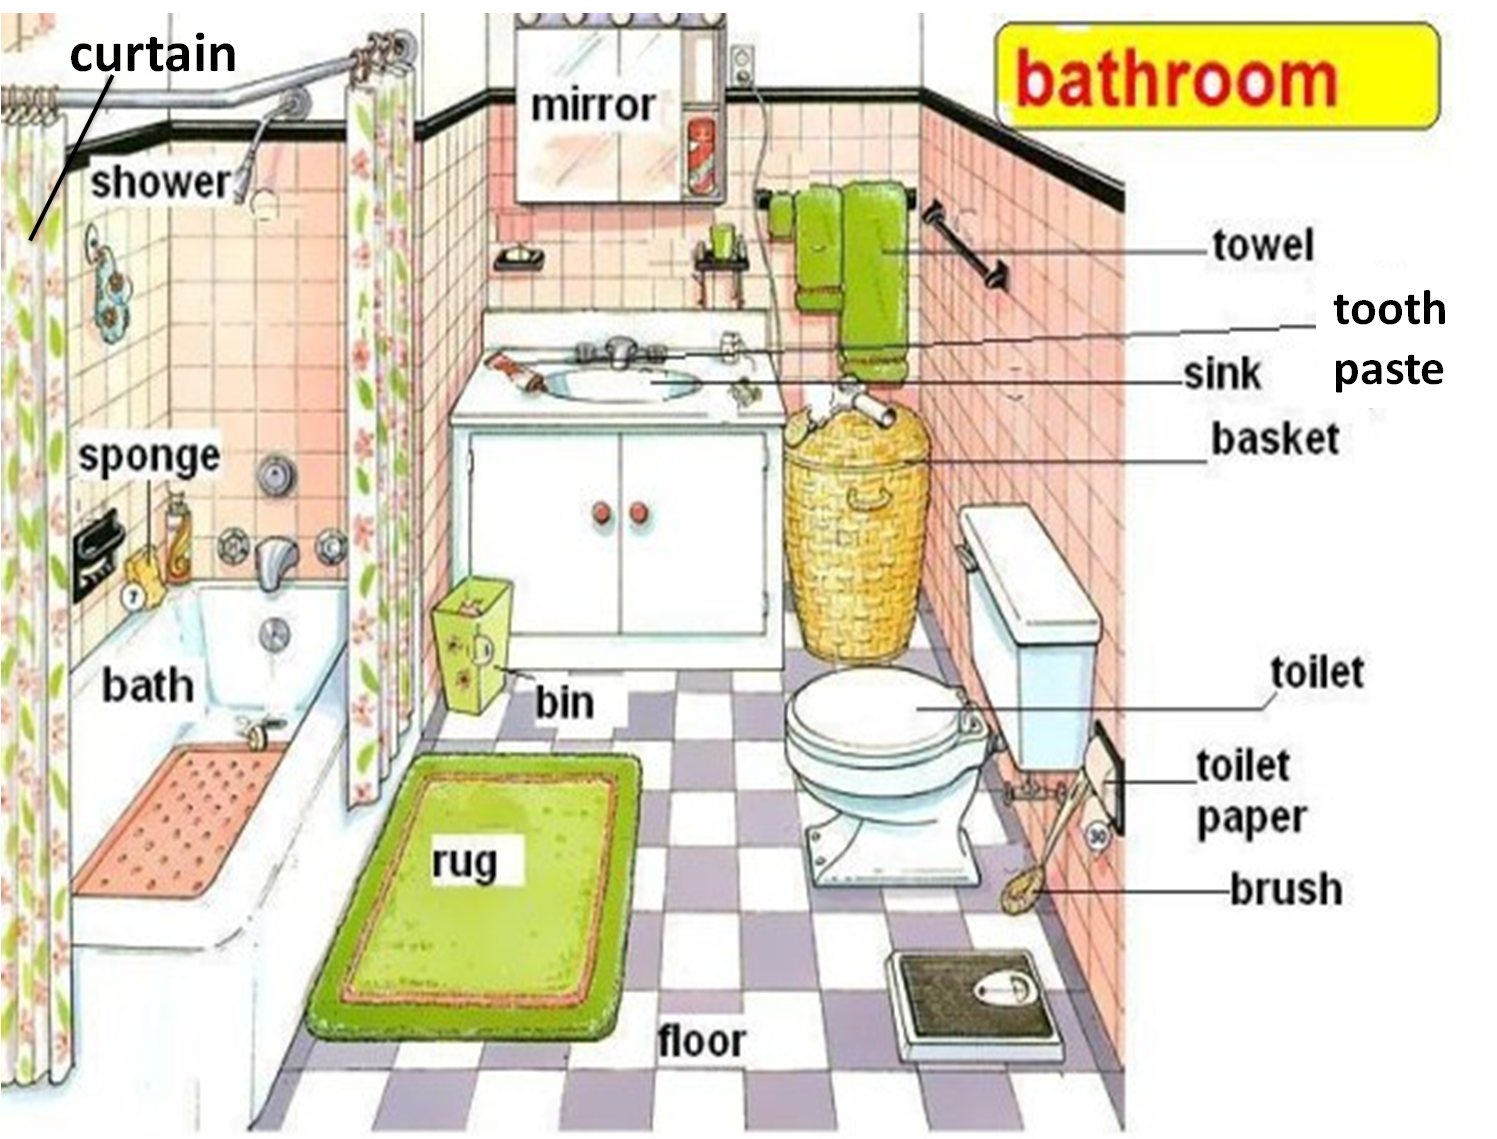 Shower на английском. Ванная комната на англ. Английский язык тема ванная комната. Предметы в ванной на английском. Ванная комната на английском для детей.